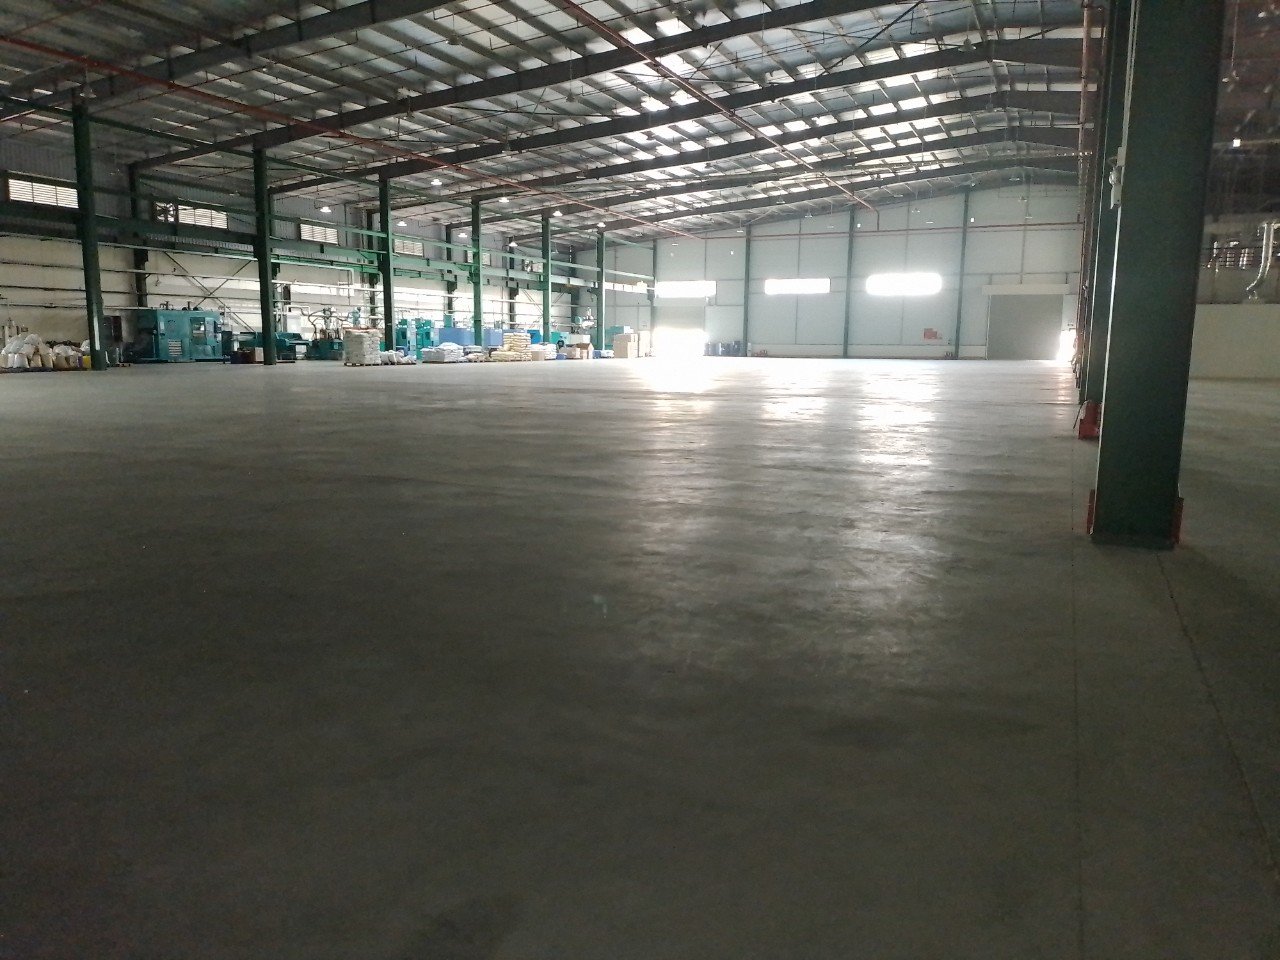 TOPLAND cho thuê 2900 m2 nhà xưởng tiêu chuẩn trong KCN tại Bắc Ninh.